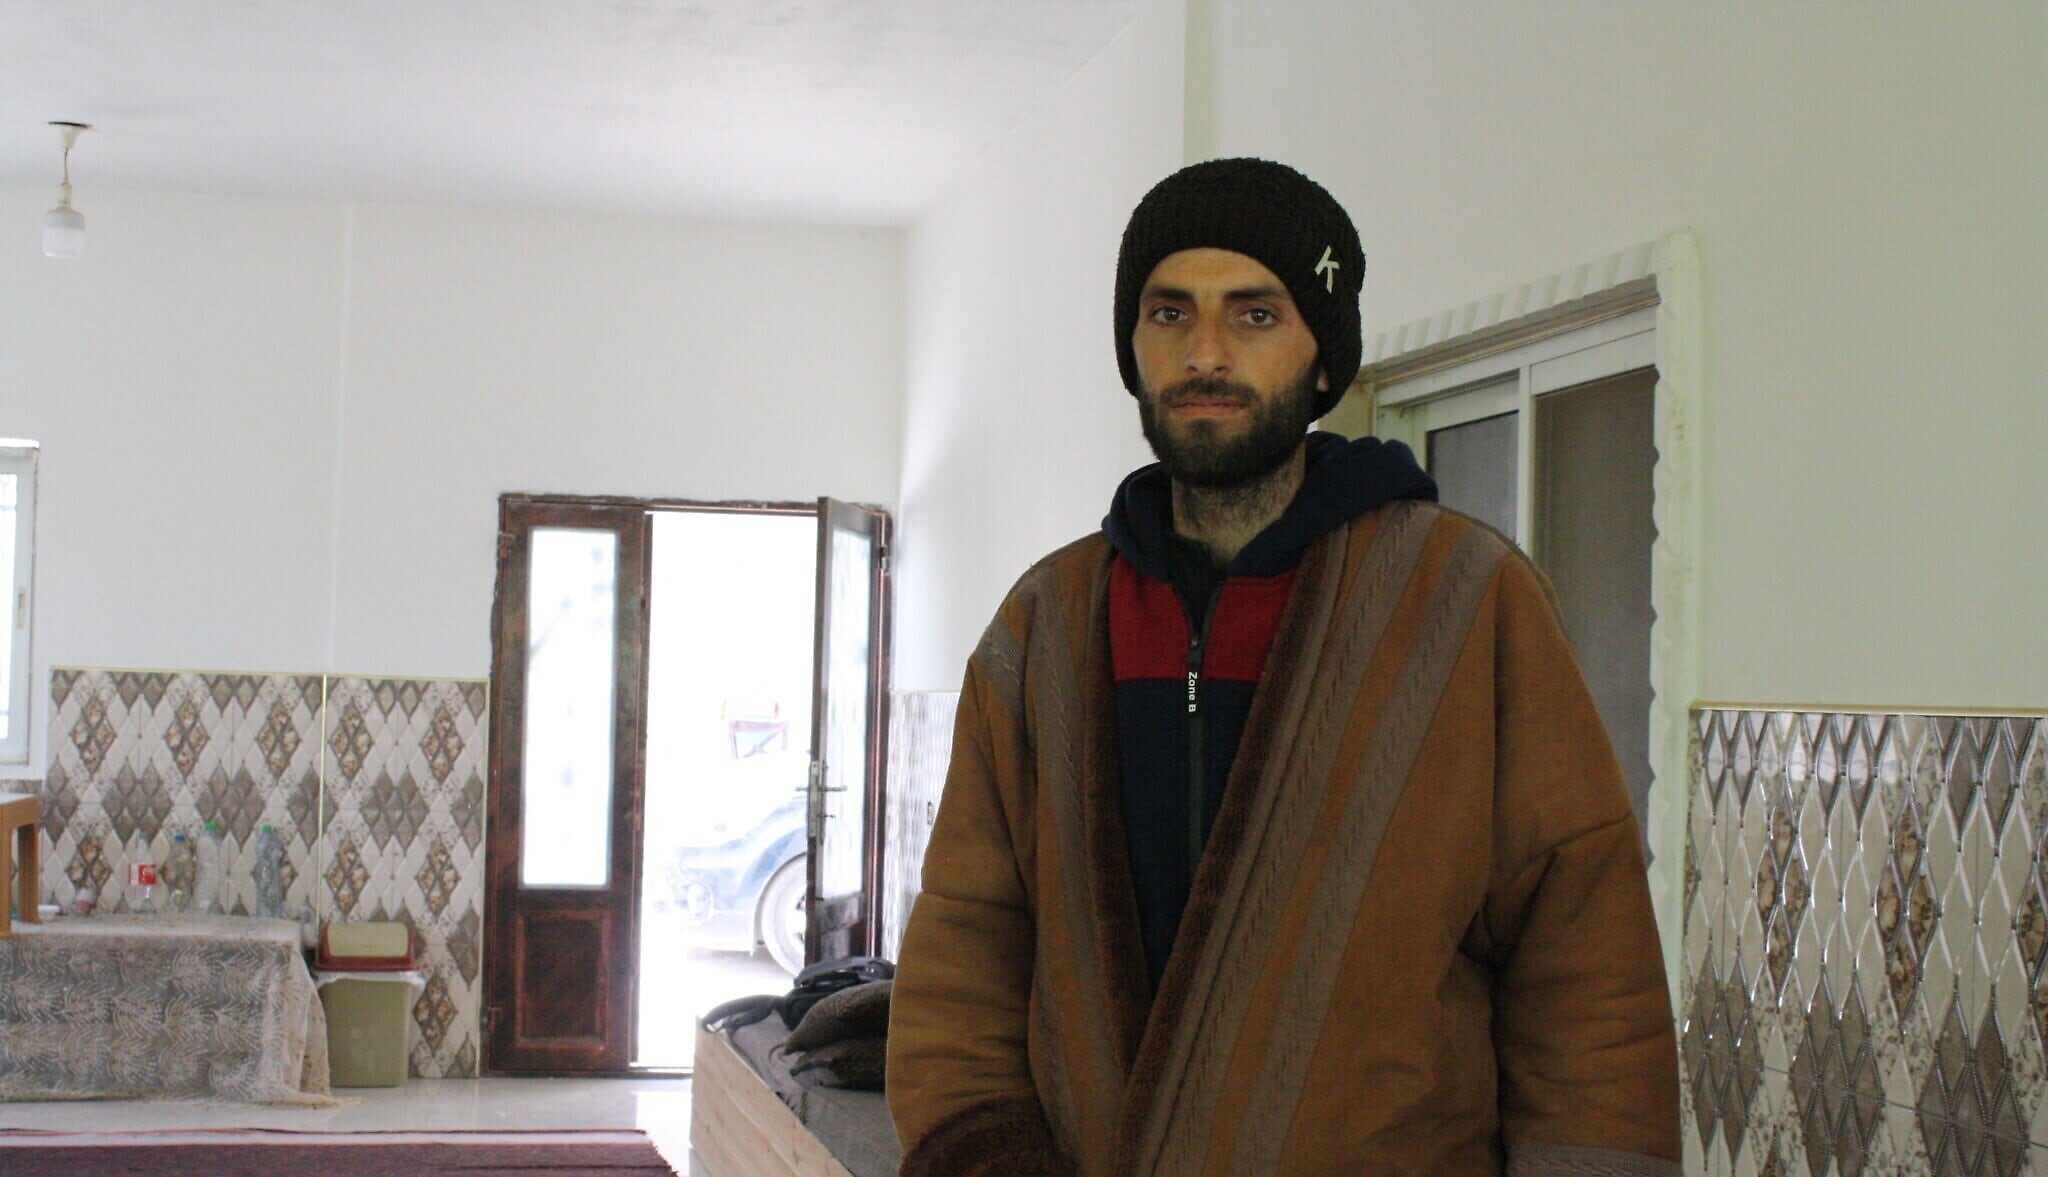 זכריא אל-עדרא, שנורה ונפצע באורח חמור על ידי מתנחל באוקטובר 2023, בביתו בכפר א-תוואני בגדה המערבית, 31 במרץ 2024 (צילום: ג'רמי שרון)